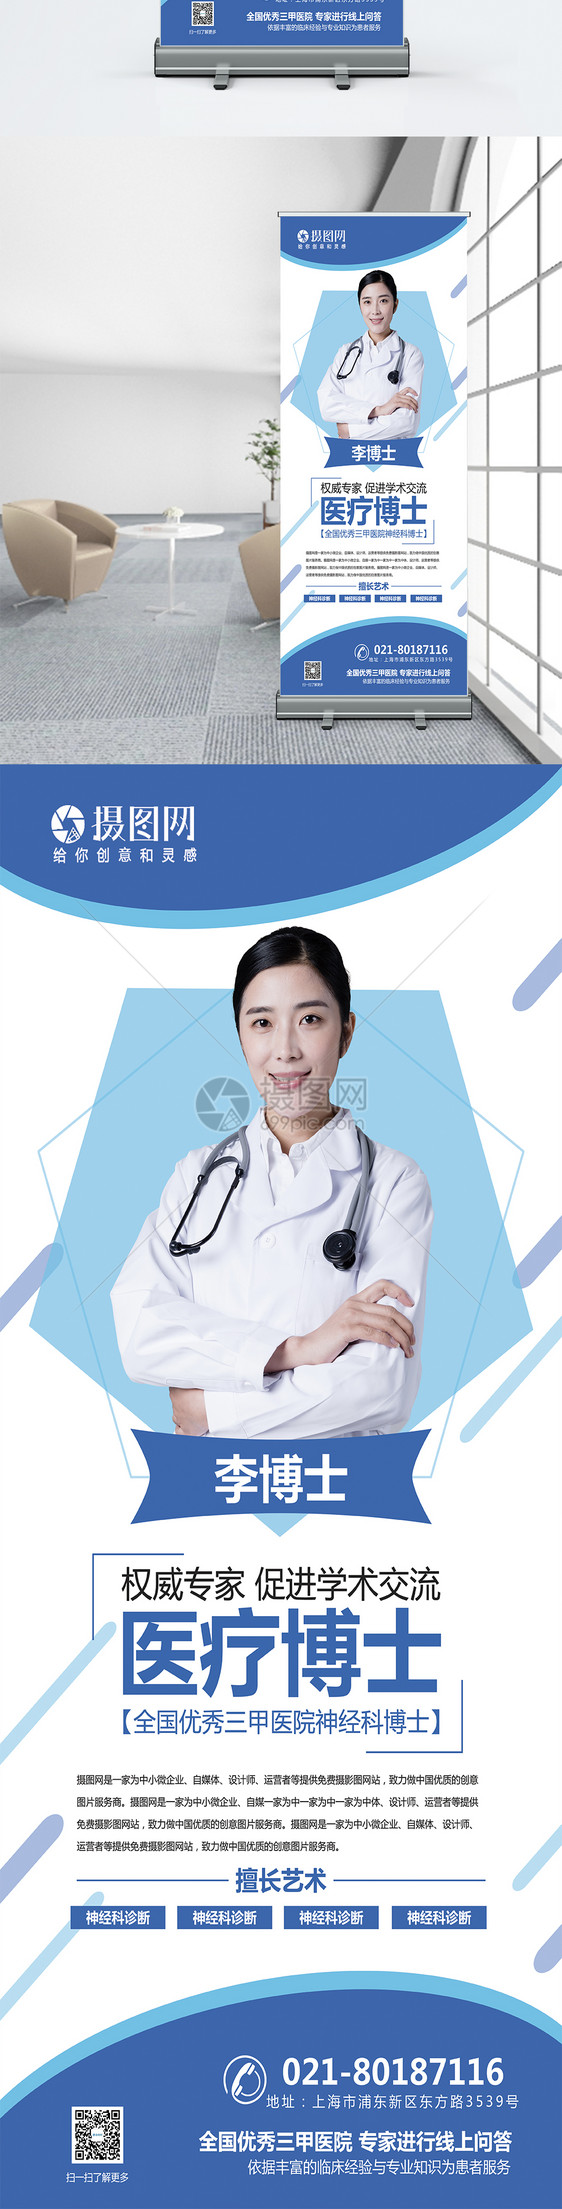 蓝色几何简约医院博士医生介绍宣传x展架图片